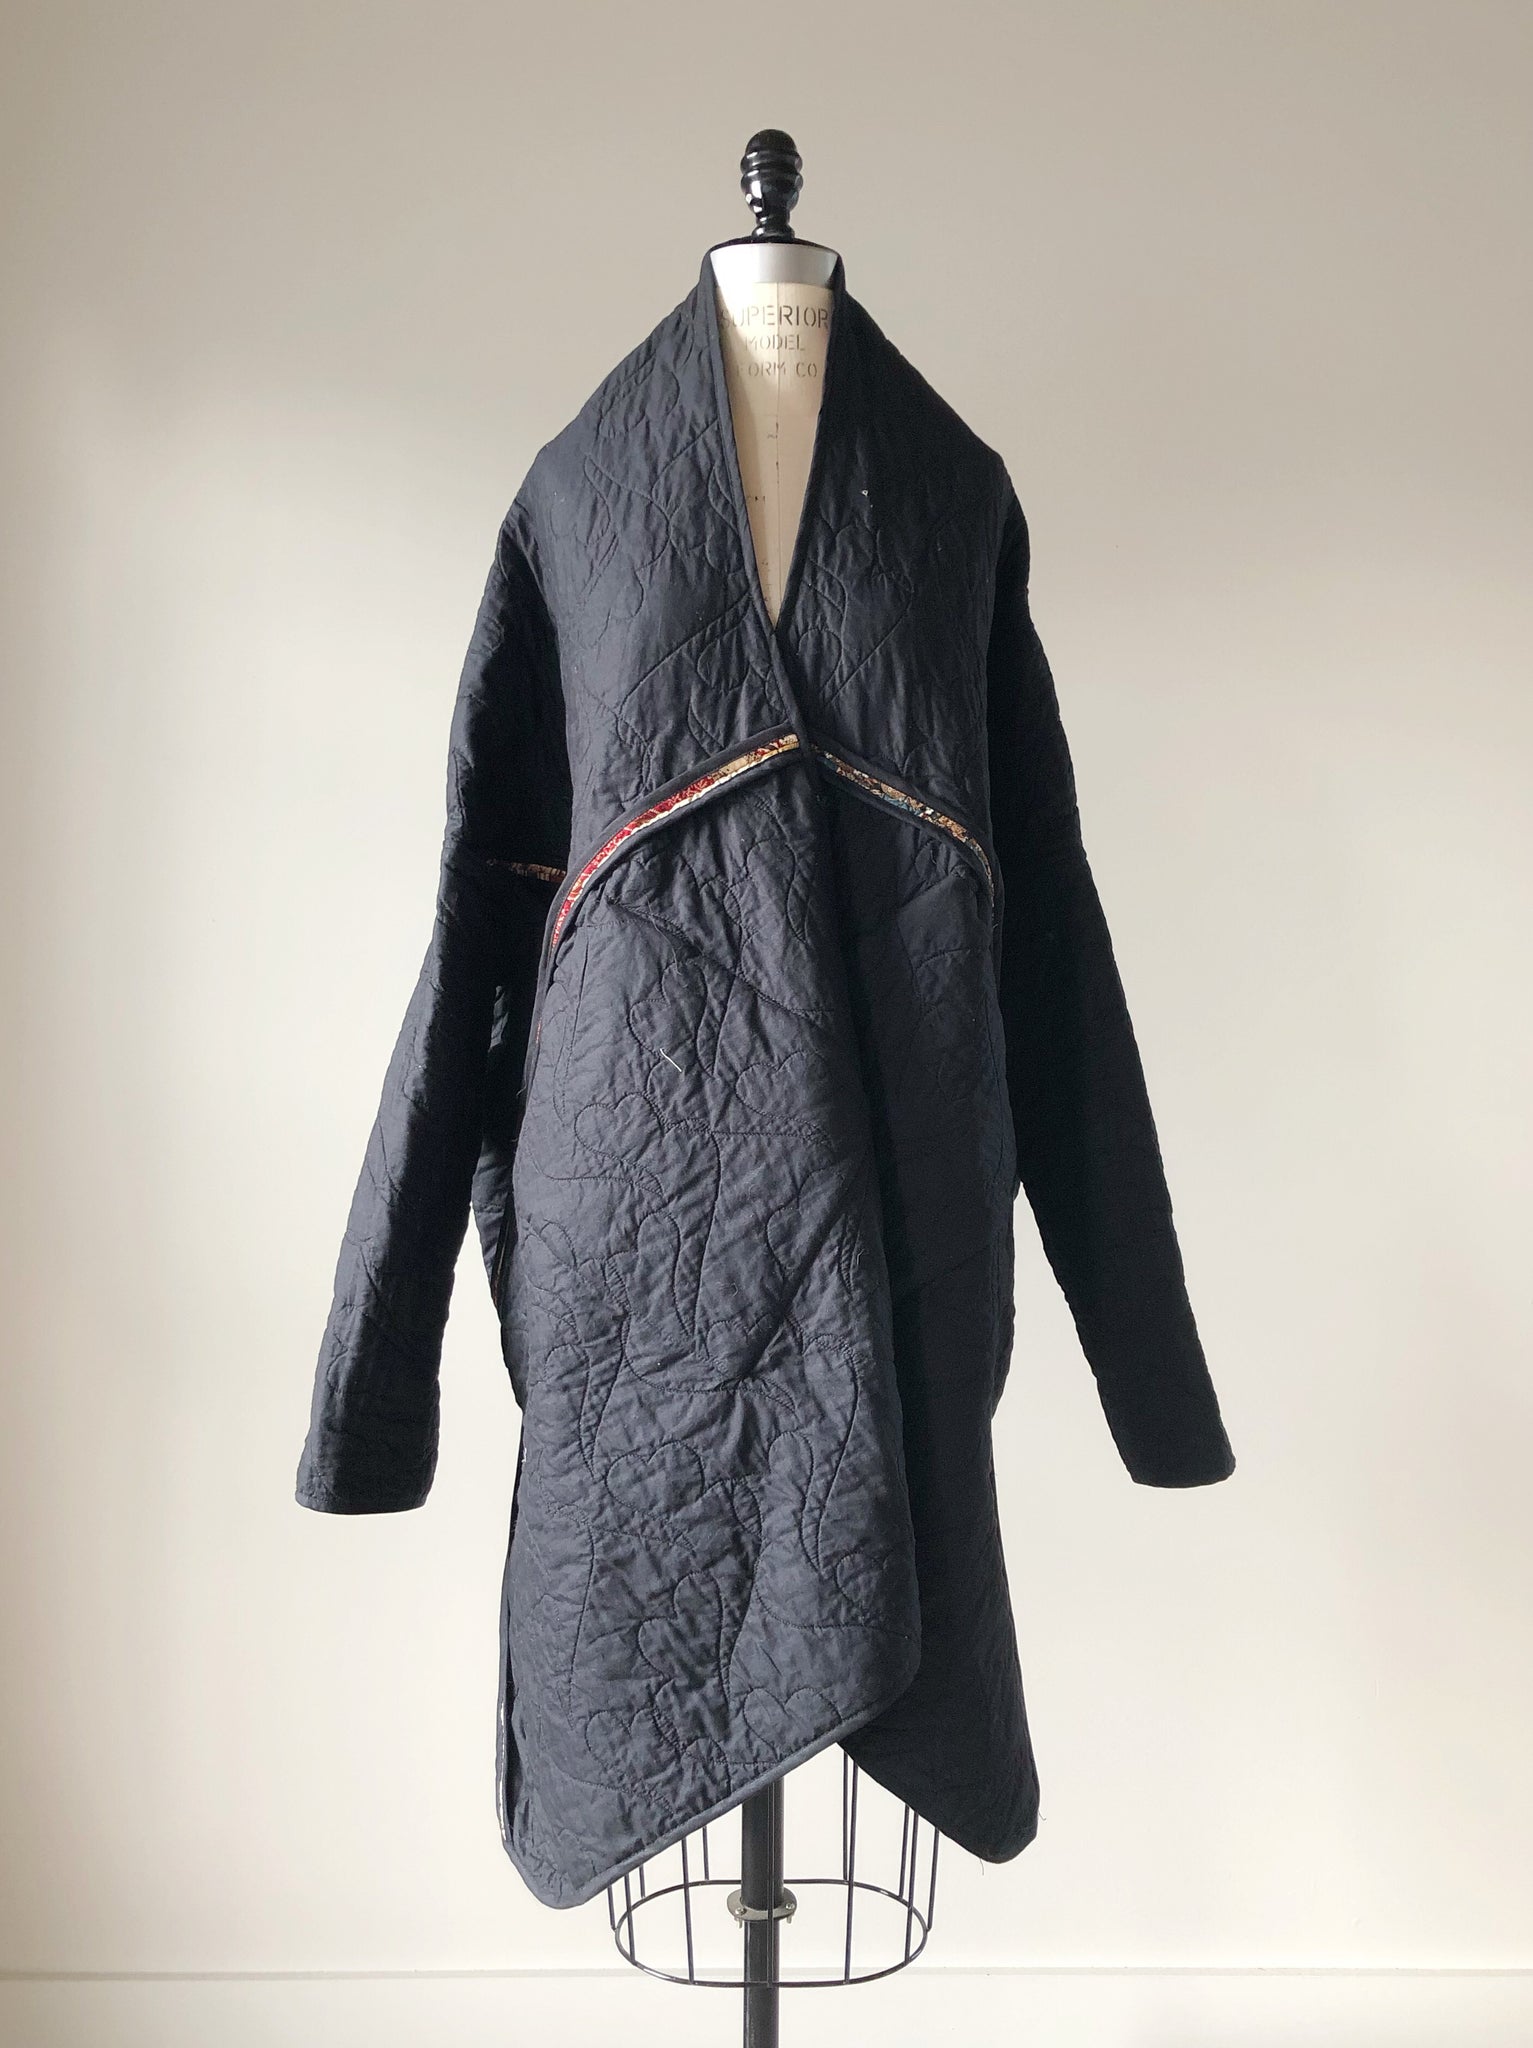 bargello quilted samurai cocoon coat